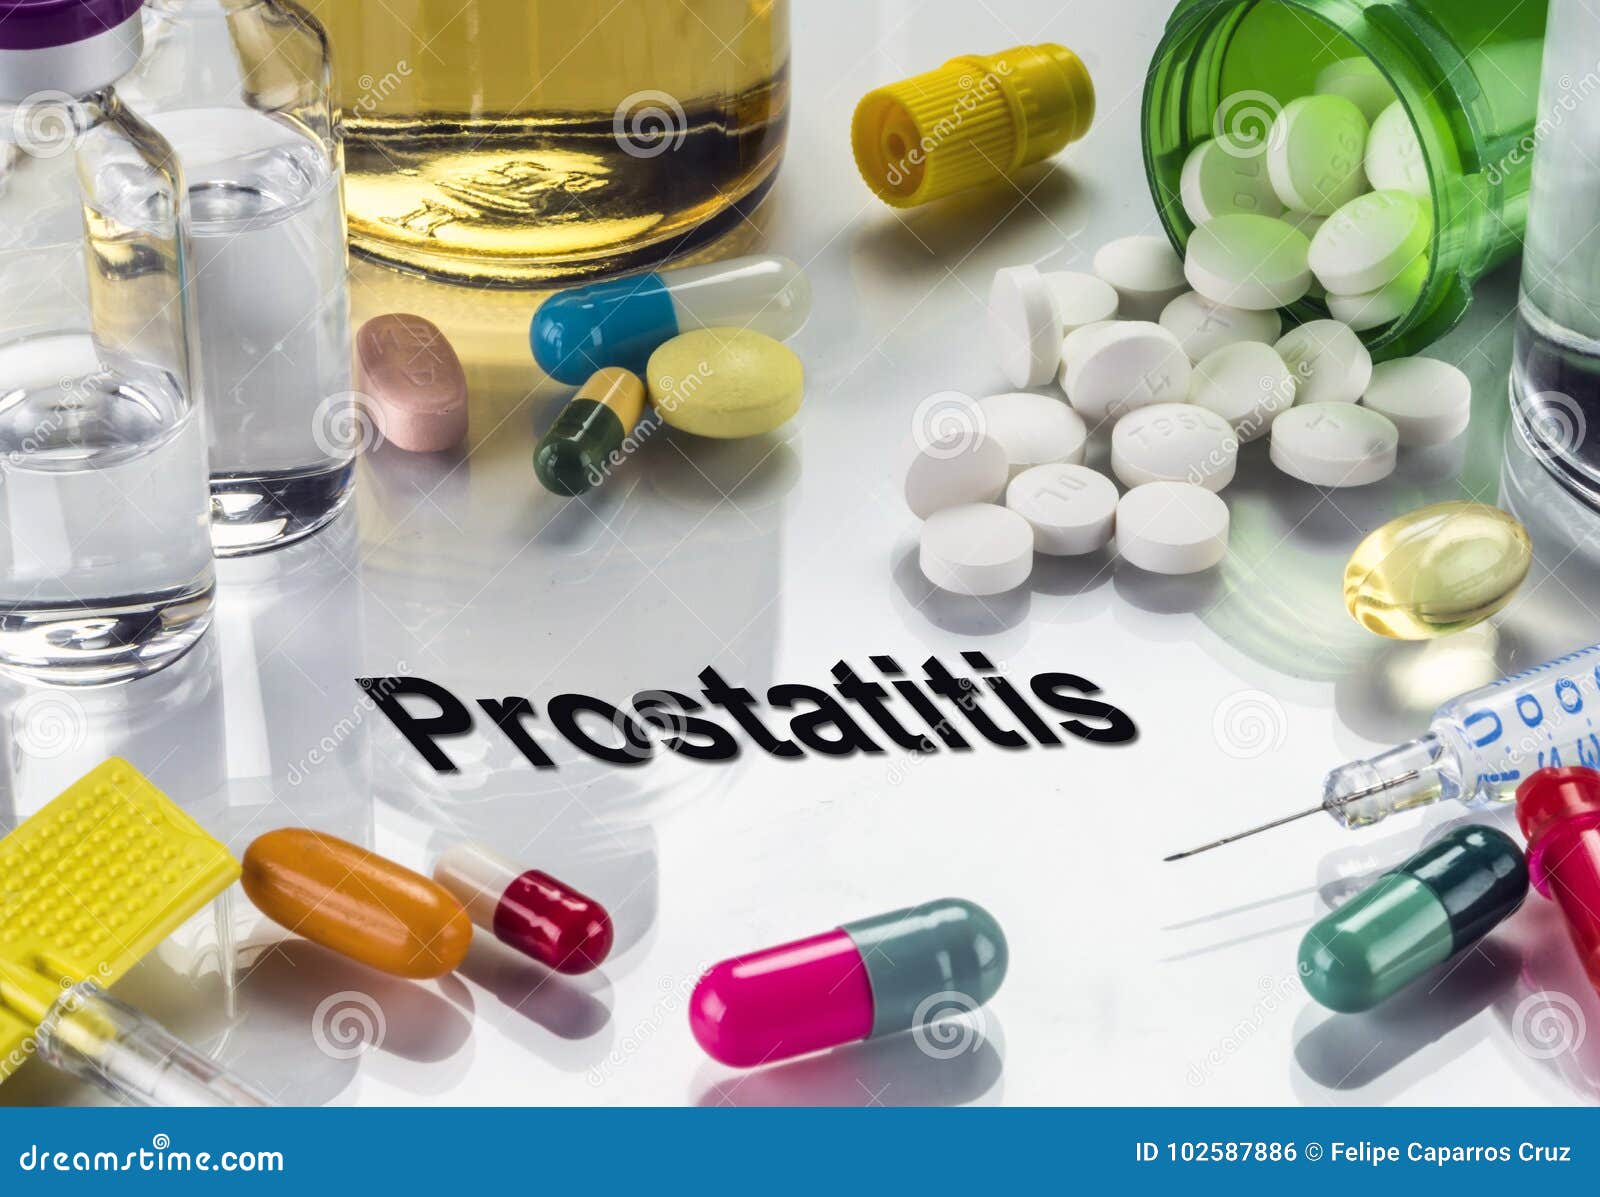 toblets for prostatitis)